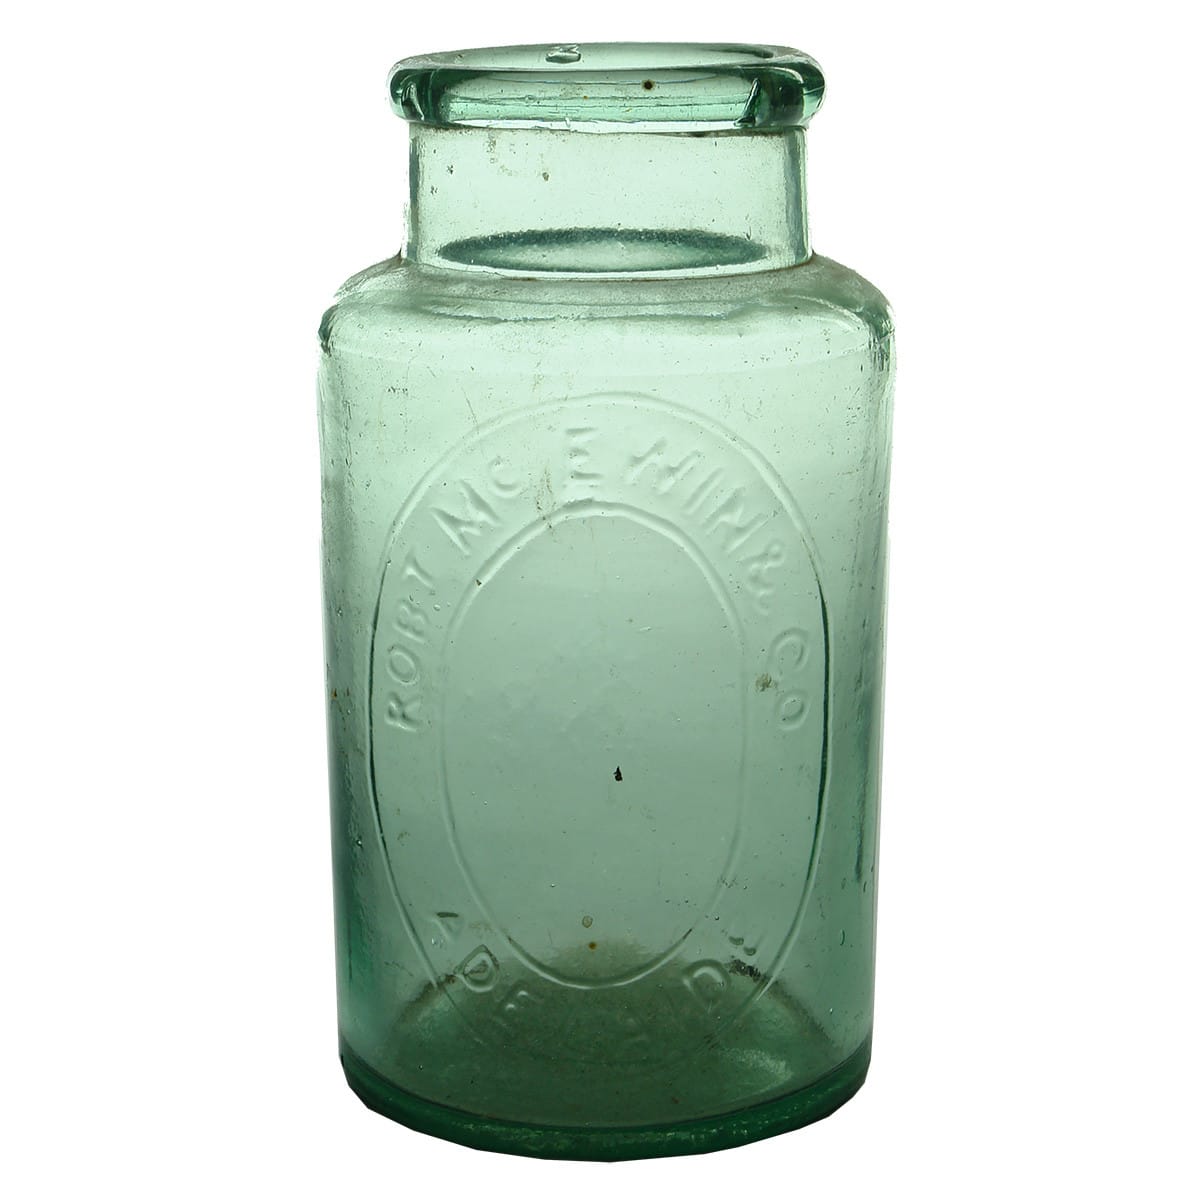 Jar. Robt McEwin & Co, Adelaide. Aqua. 2 pound. (South Australia)